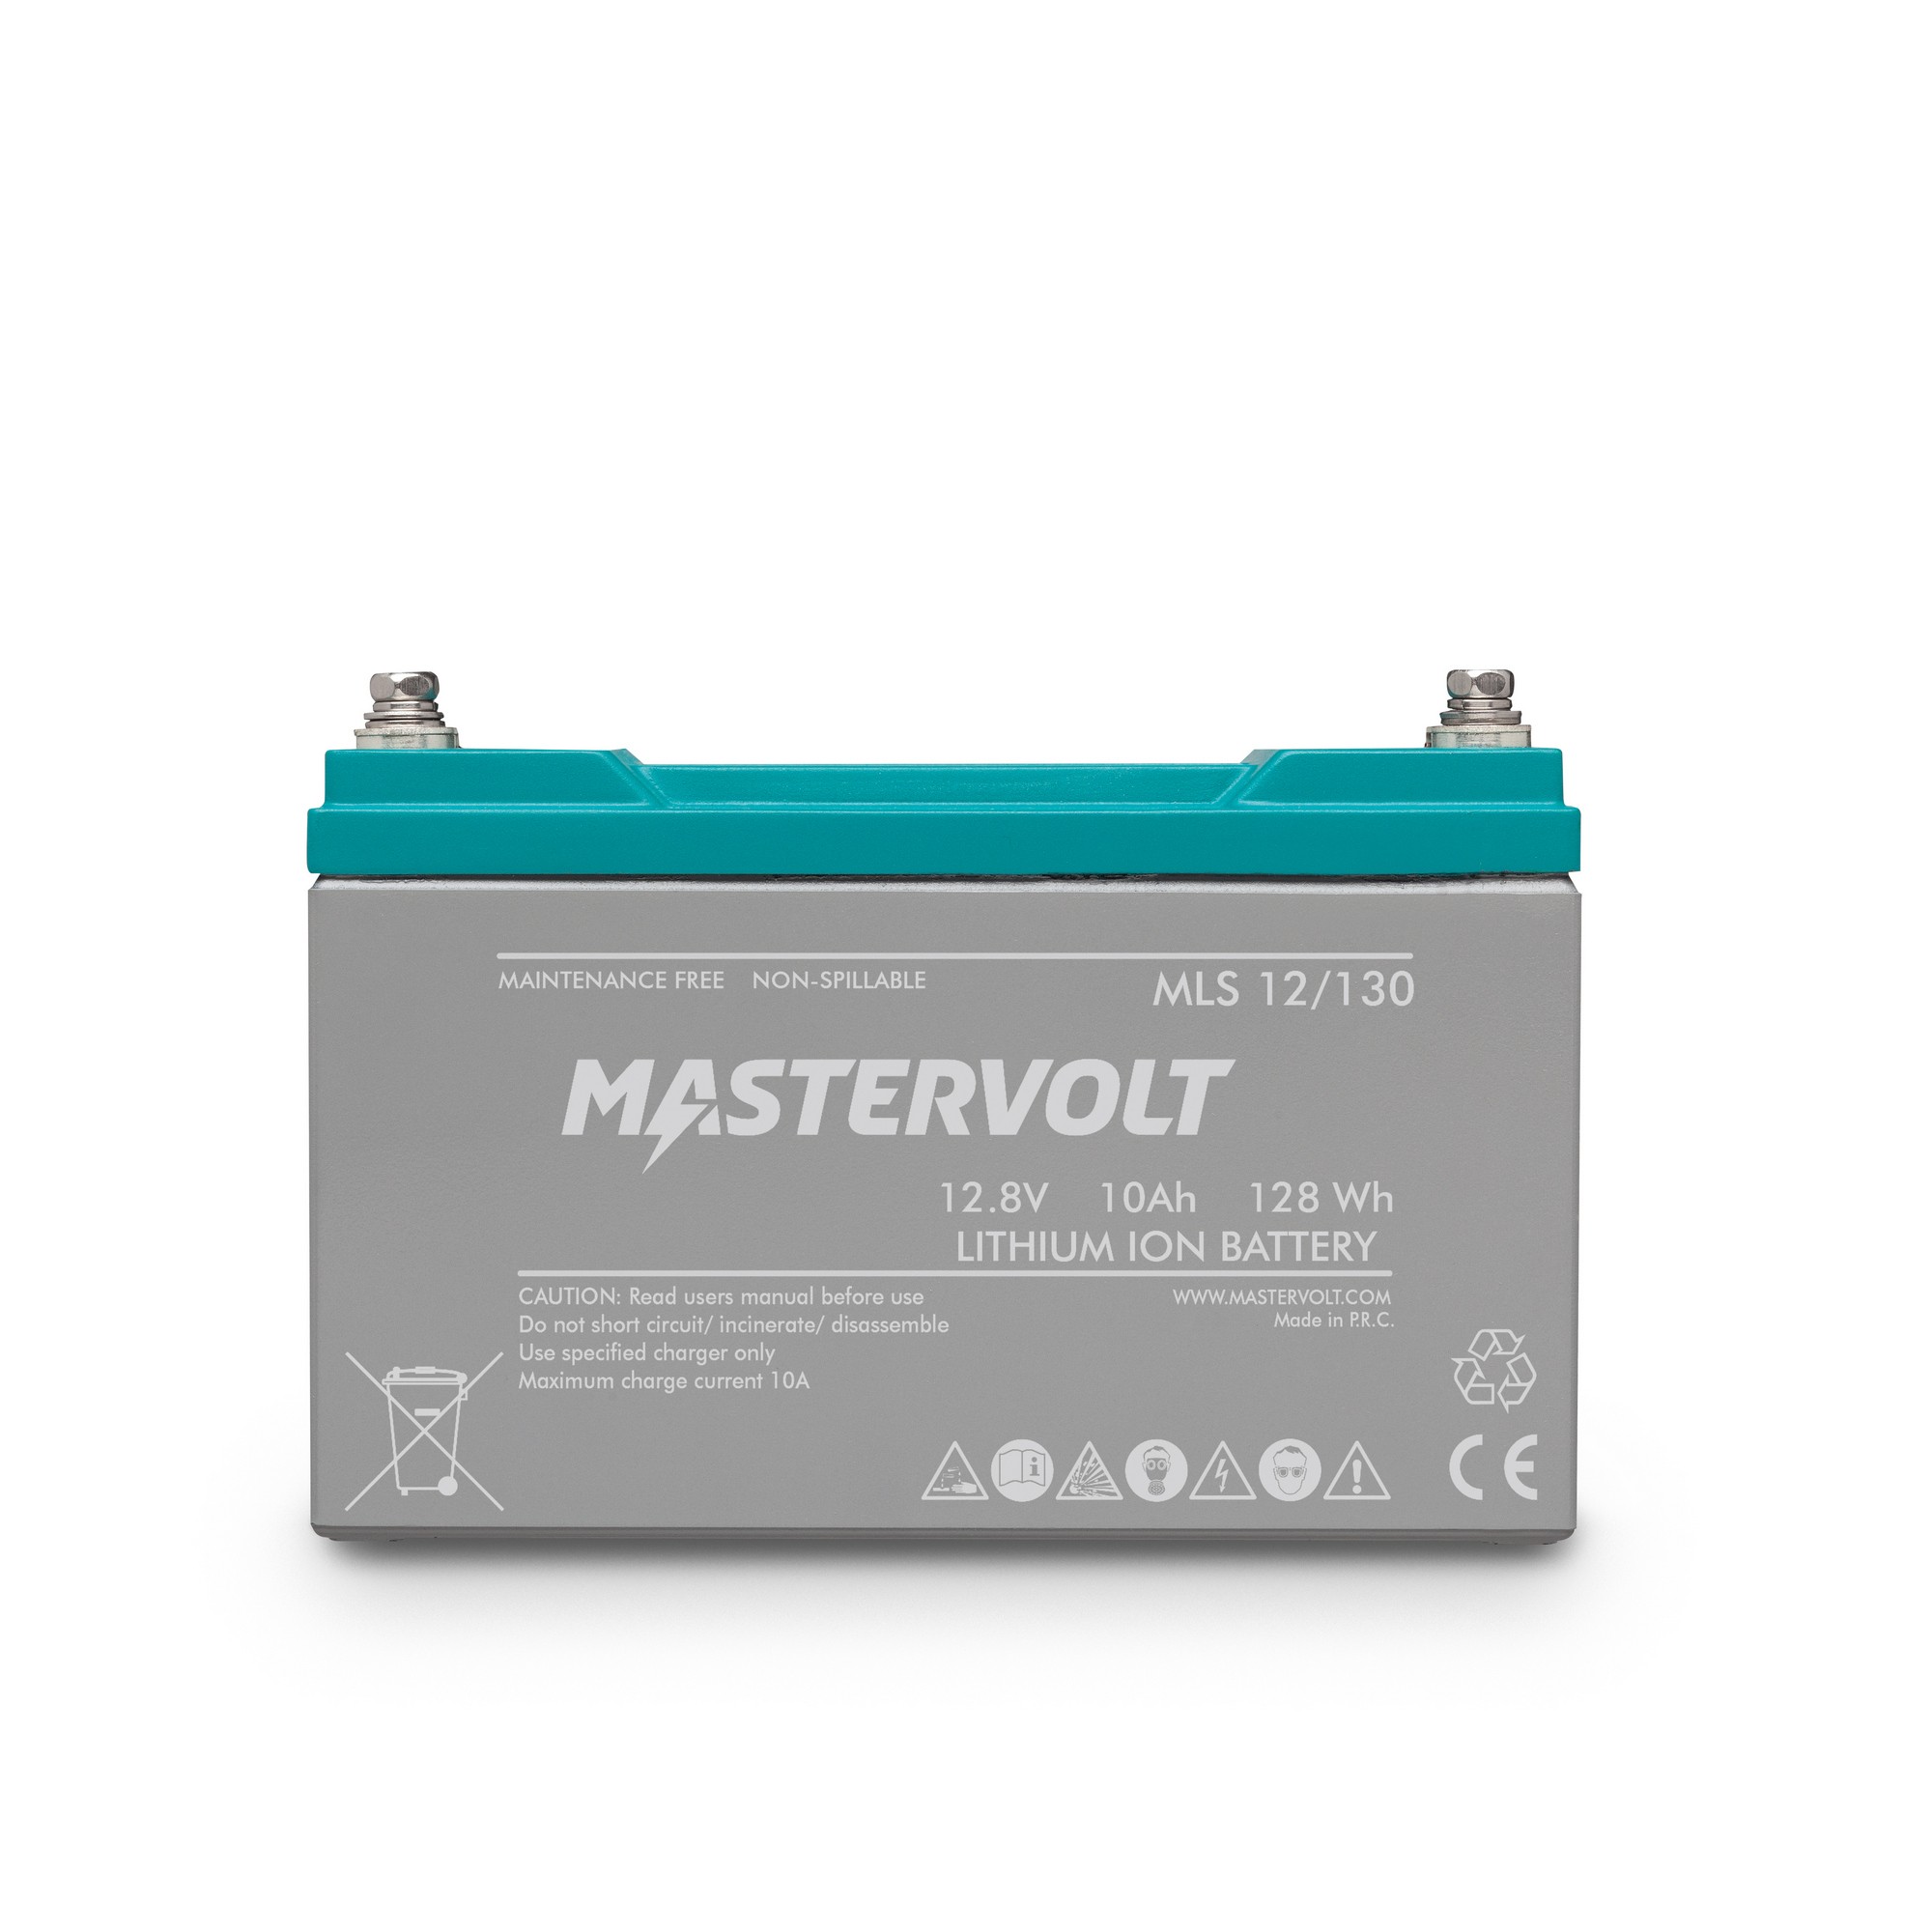 Литий-ионный аккумулятор Mastervolt MLS 12/130 65010010 12 В 10 Ач 128 Втч 151 x 65 x 102 мм IP65